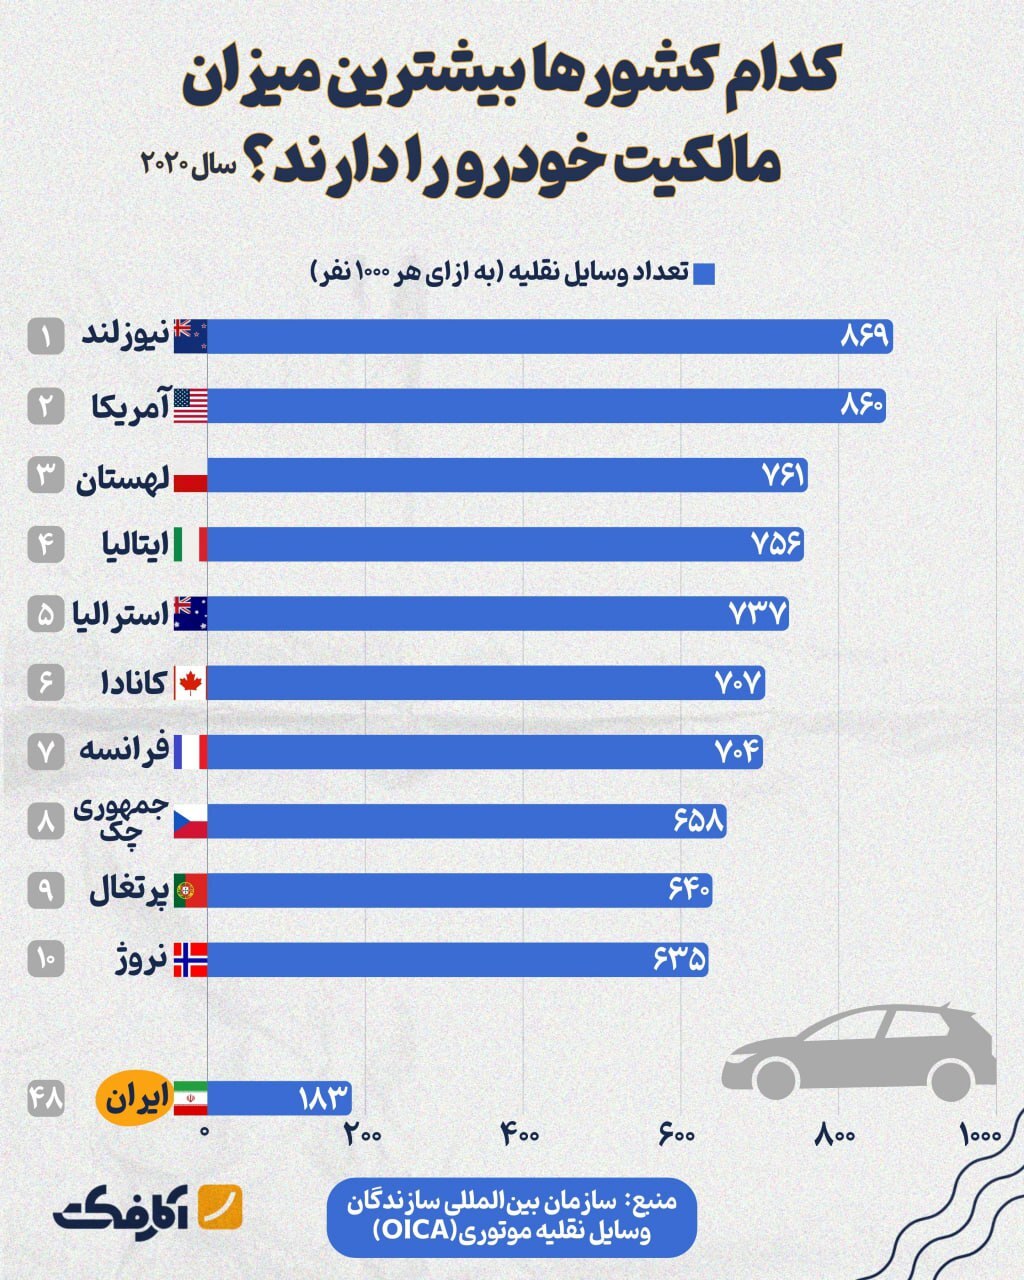 اینفوگرافی/ به ازای هر ۱۰۰۰ ایرانی، ۱۸۳ خودرو